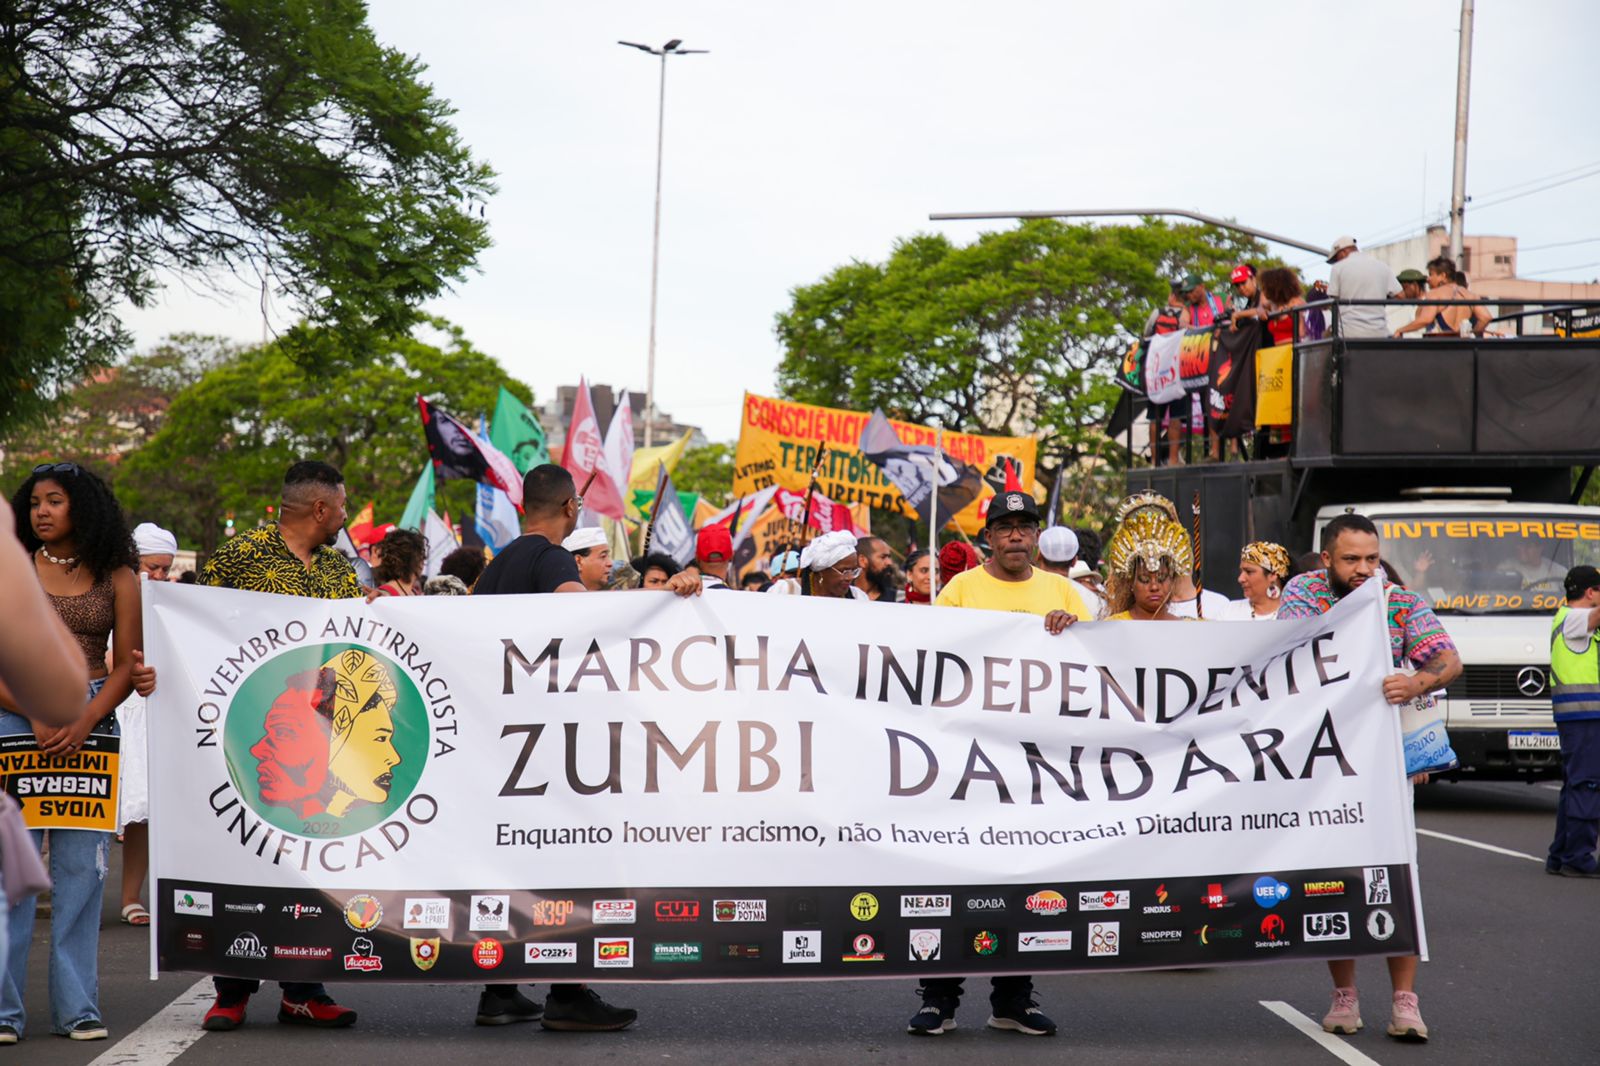 Marcha Independente Zumbi e Dandara marca Dia da Consciência Negra em Porto Alegre